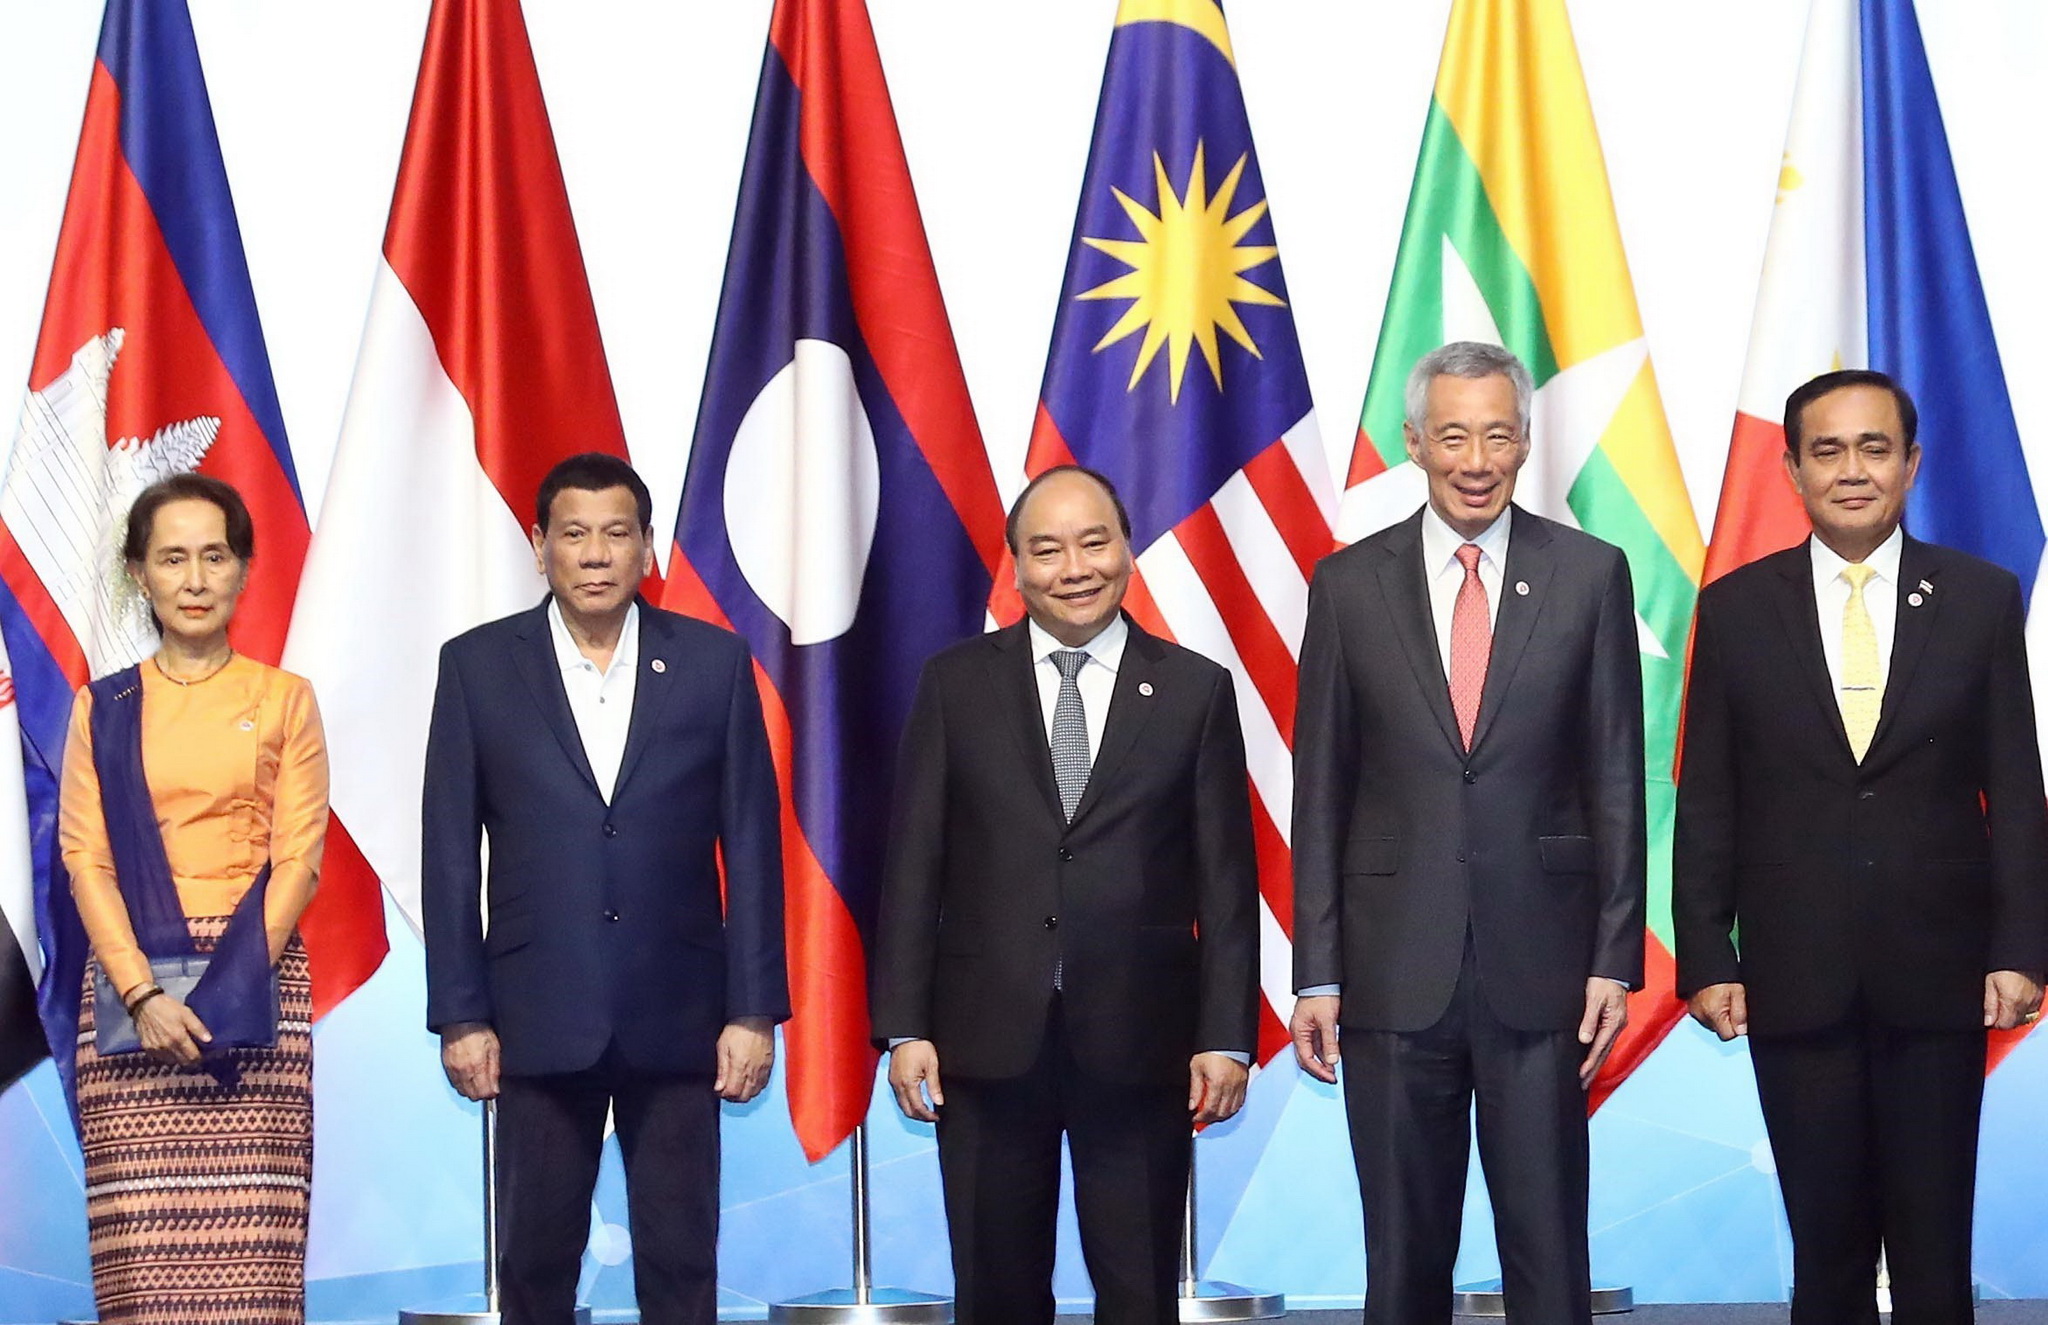 Thủ tướng Nguyễn Xuân Phúc (giữa) và các trưởng đoàn chụp ảnh chung tại Lễ khai mạc Hội nghị Cấp cao ASEAN 33. (Ảnh: Thống Nhất/TTXVN)